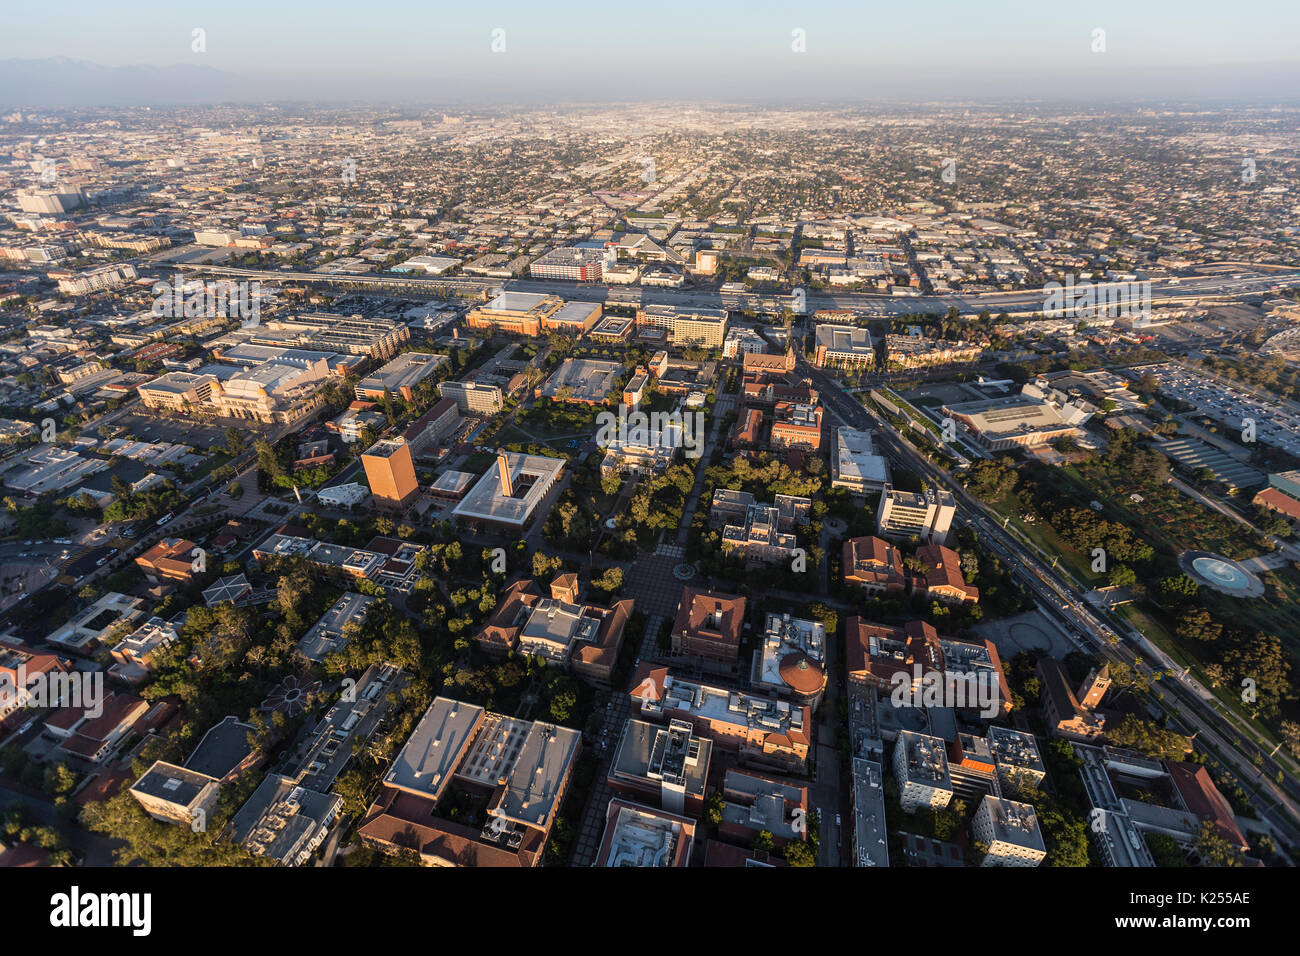 Vista aérea de la Universidad del Sur de California y los barrios al sur del centro de Los Ángeles. Foto de stock